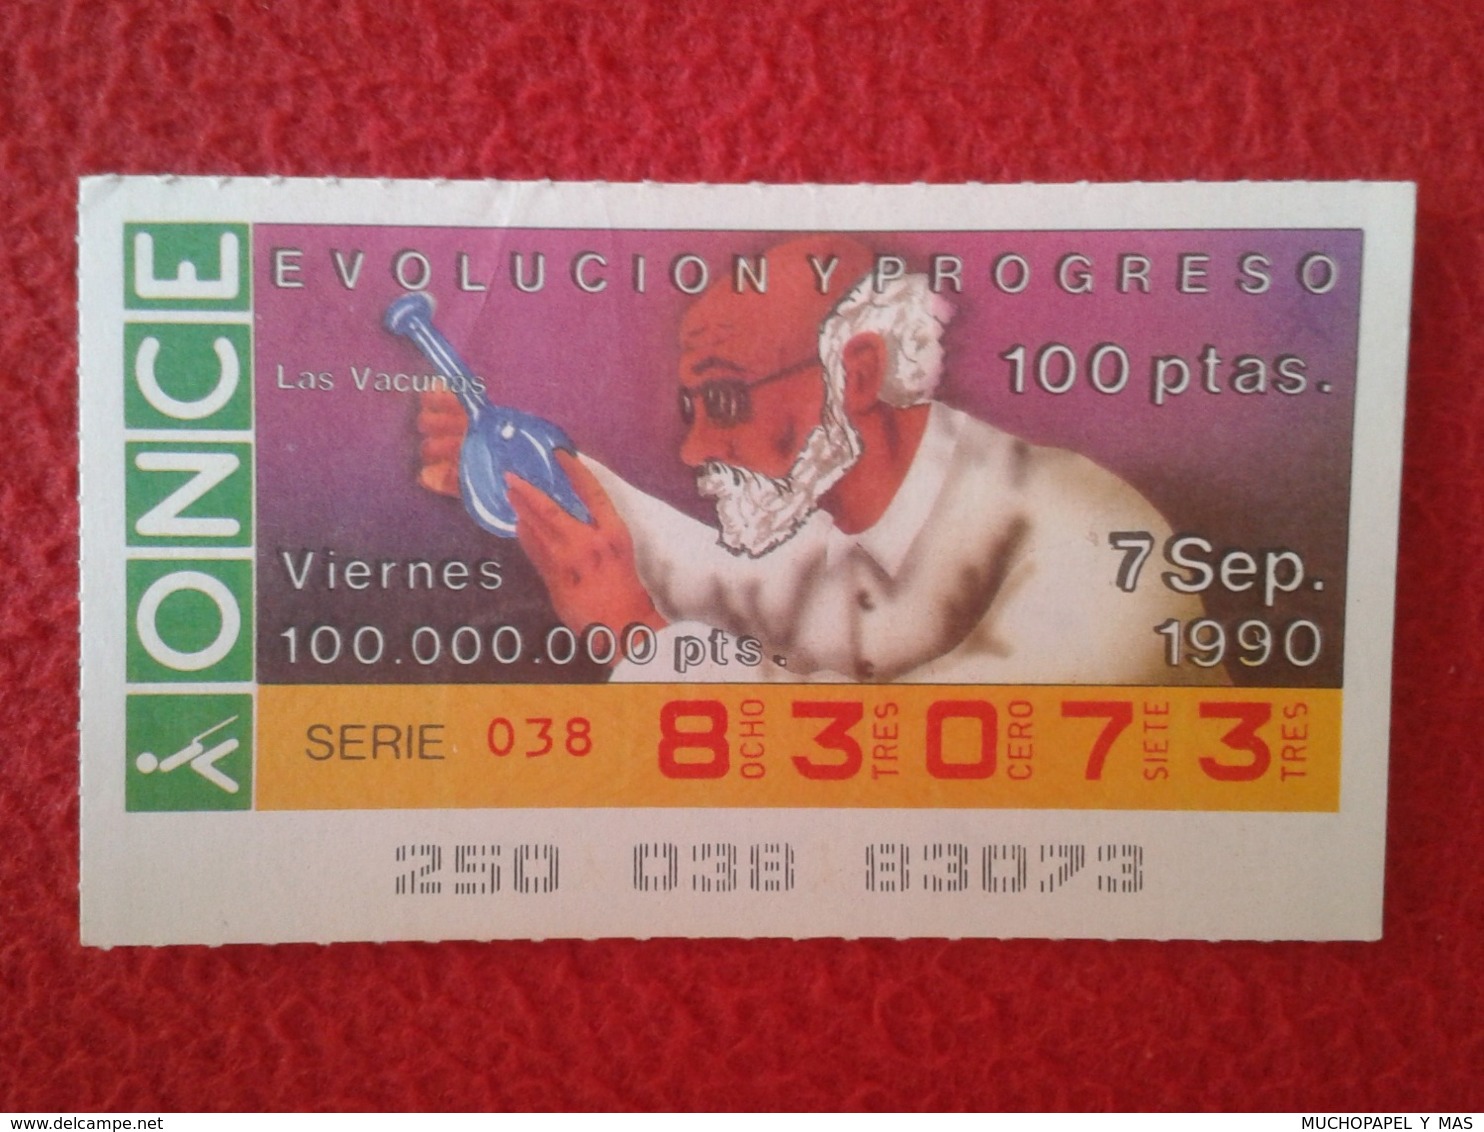 SPAIN CUPÓN DE ONCE LOTTERY LOTERÍA ESPAÑA 1990 EVOLUCIÓN Y PROGRESO EVOLUTION AND PROGRESS LAS VACUNAS VACCINES VACCINE - Lottery Tickets